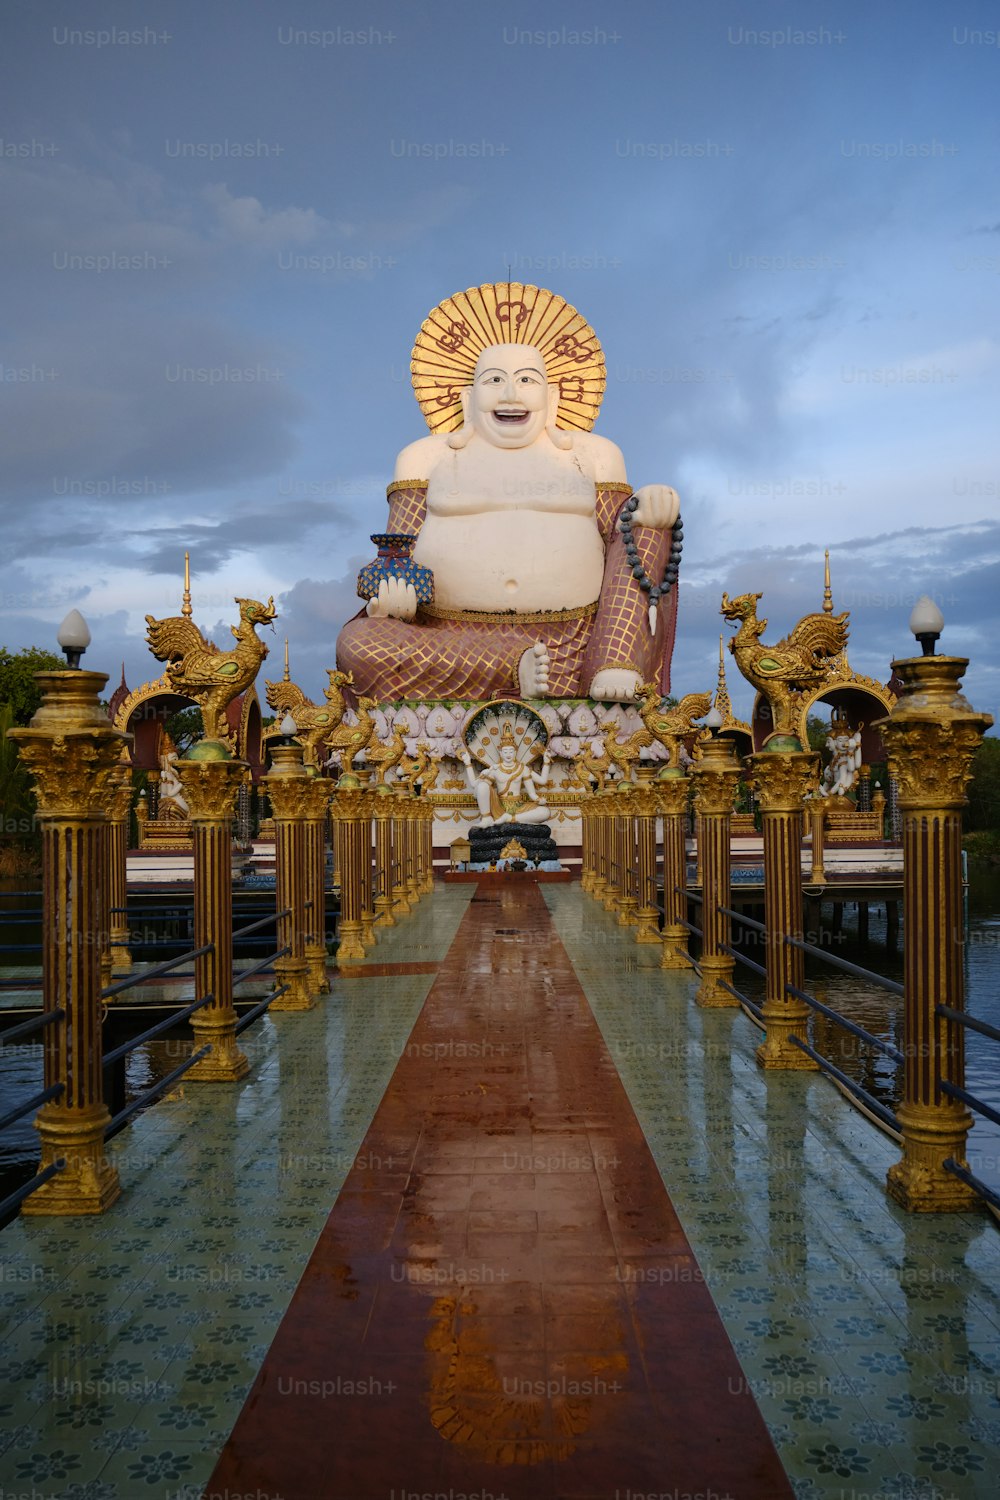 Una gran estatua de Buda sentada en medio de una pasarela